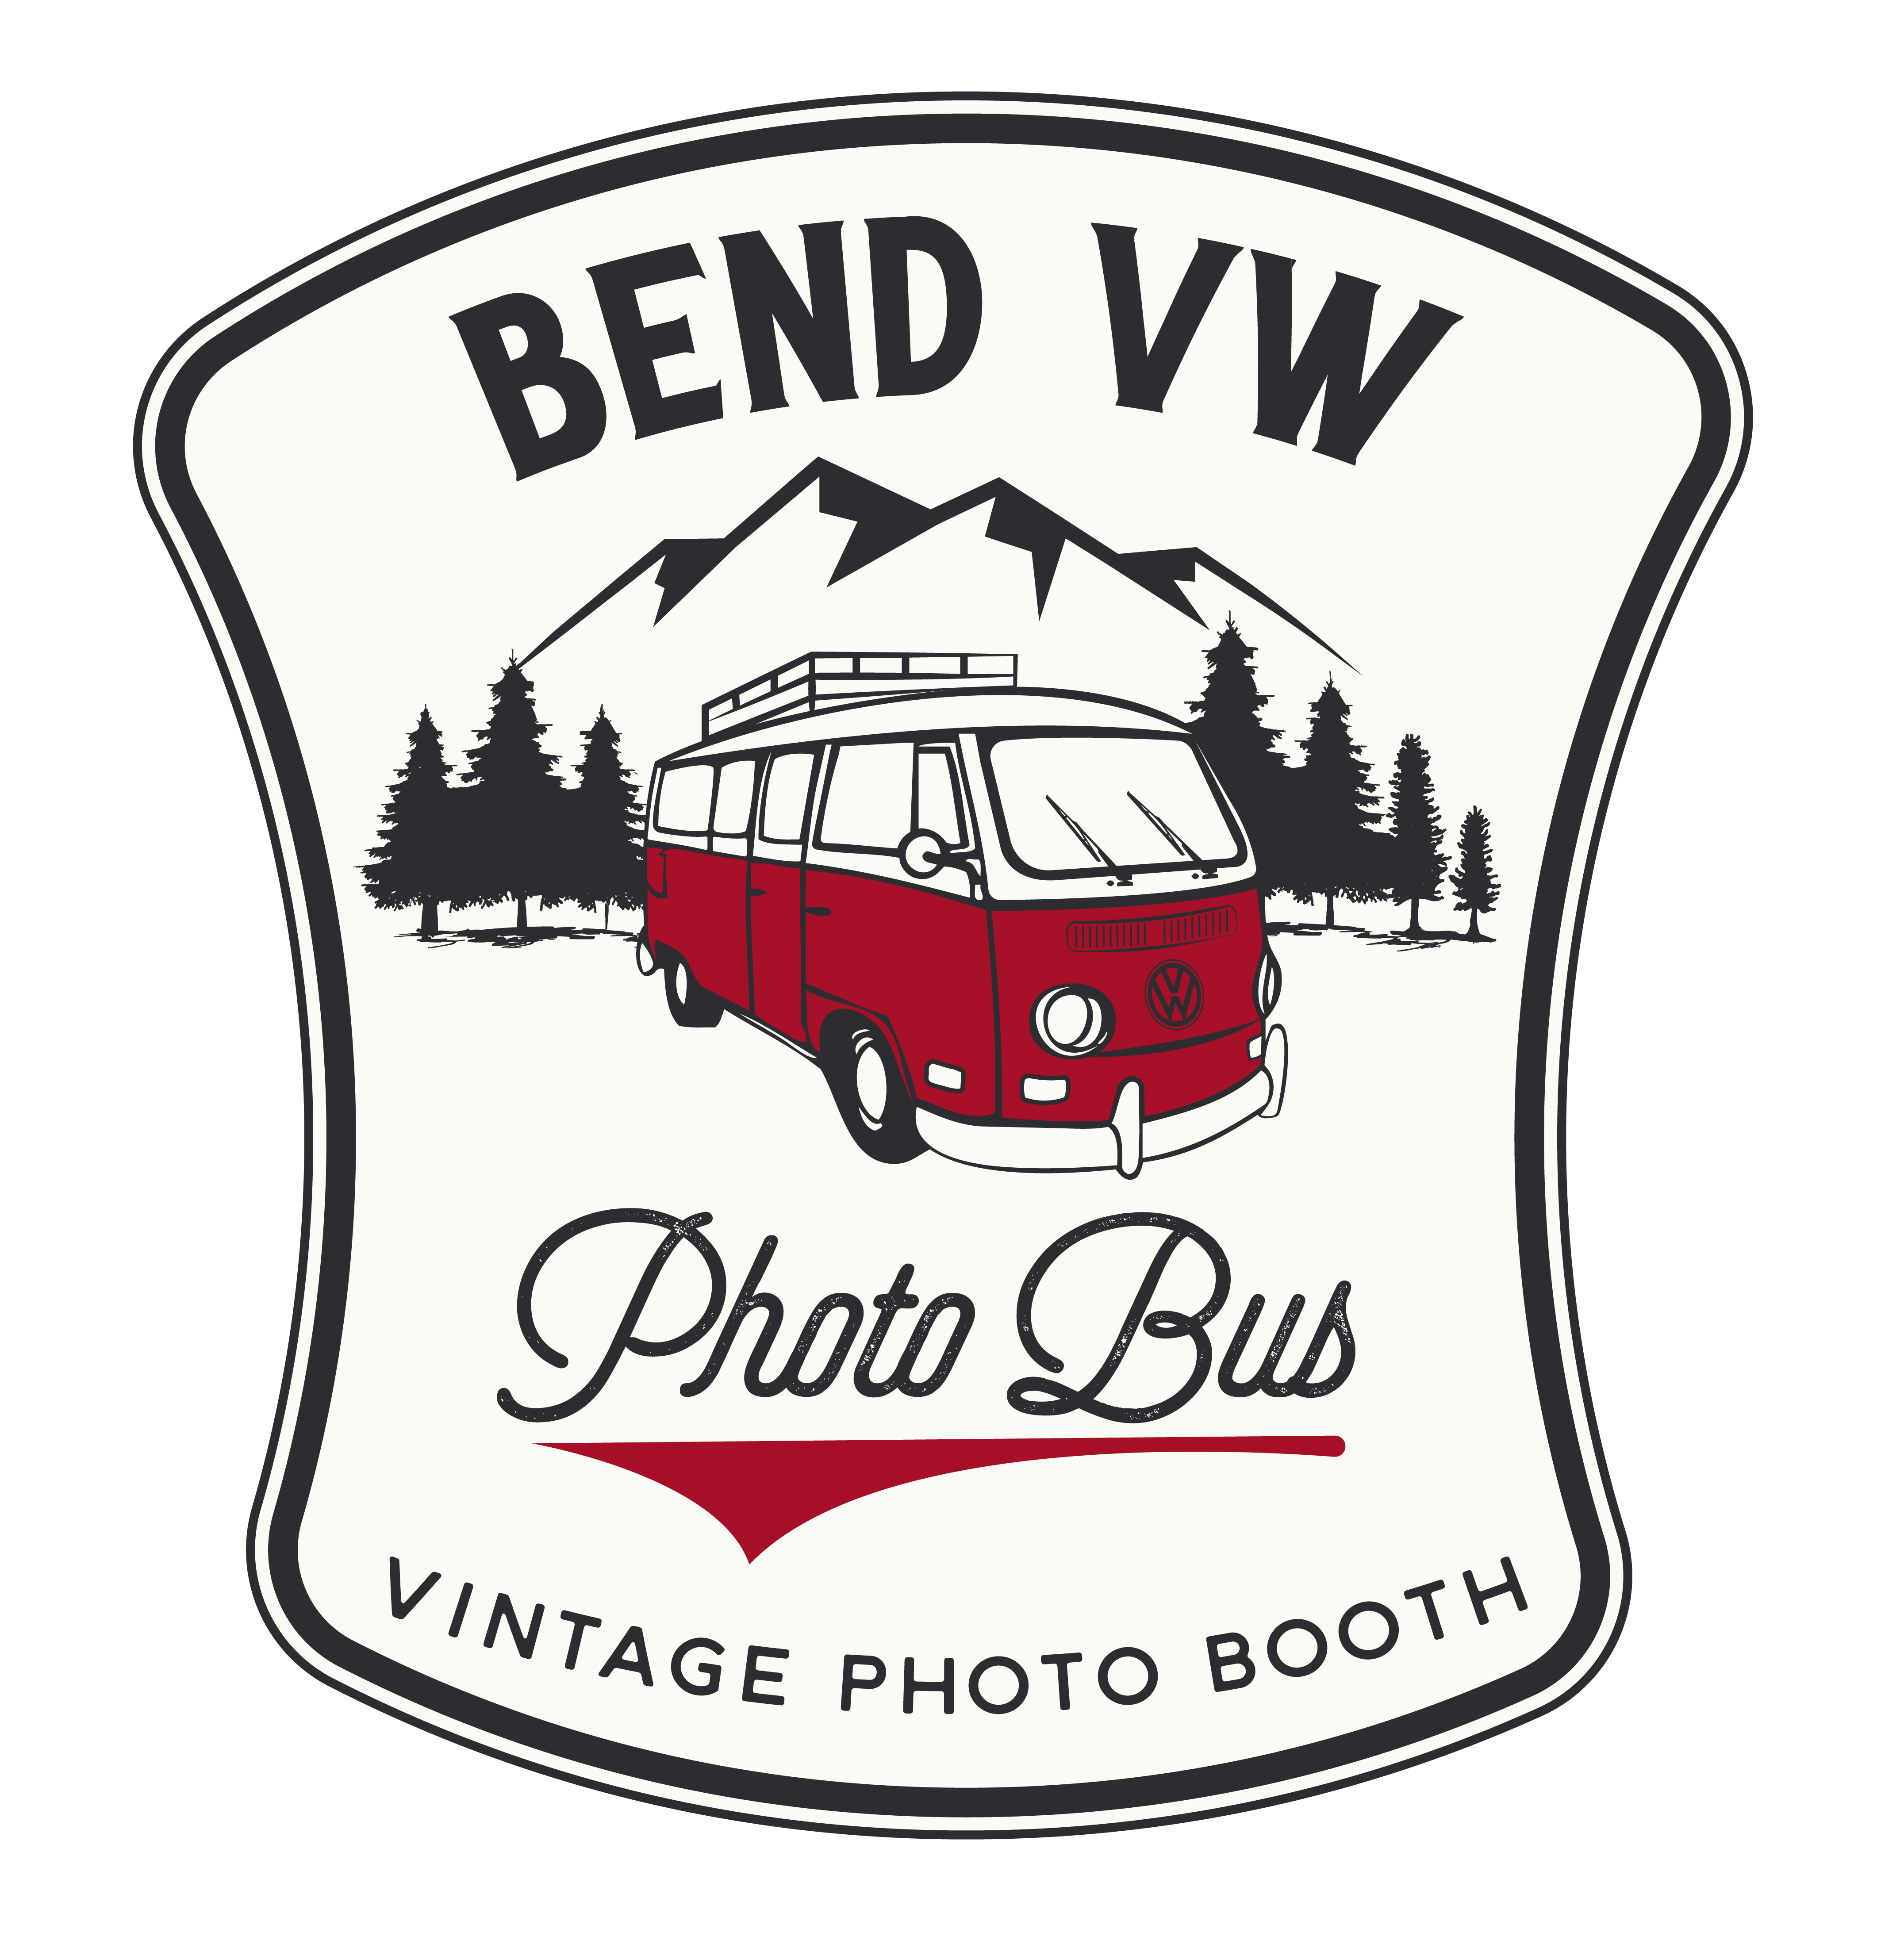 Bend VW Photo Bus Logo